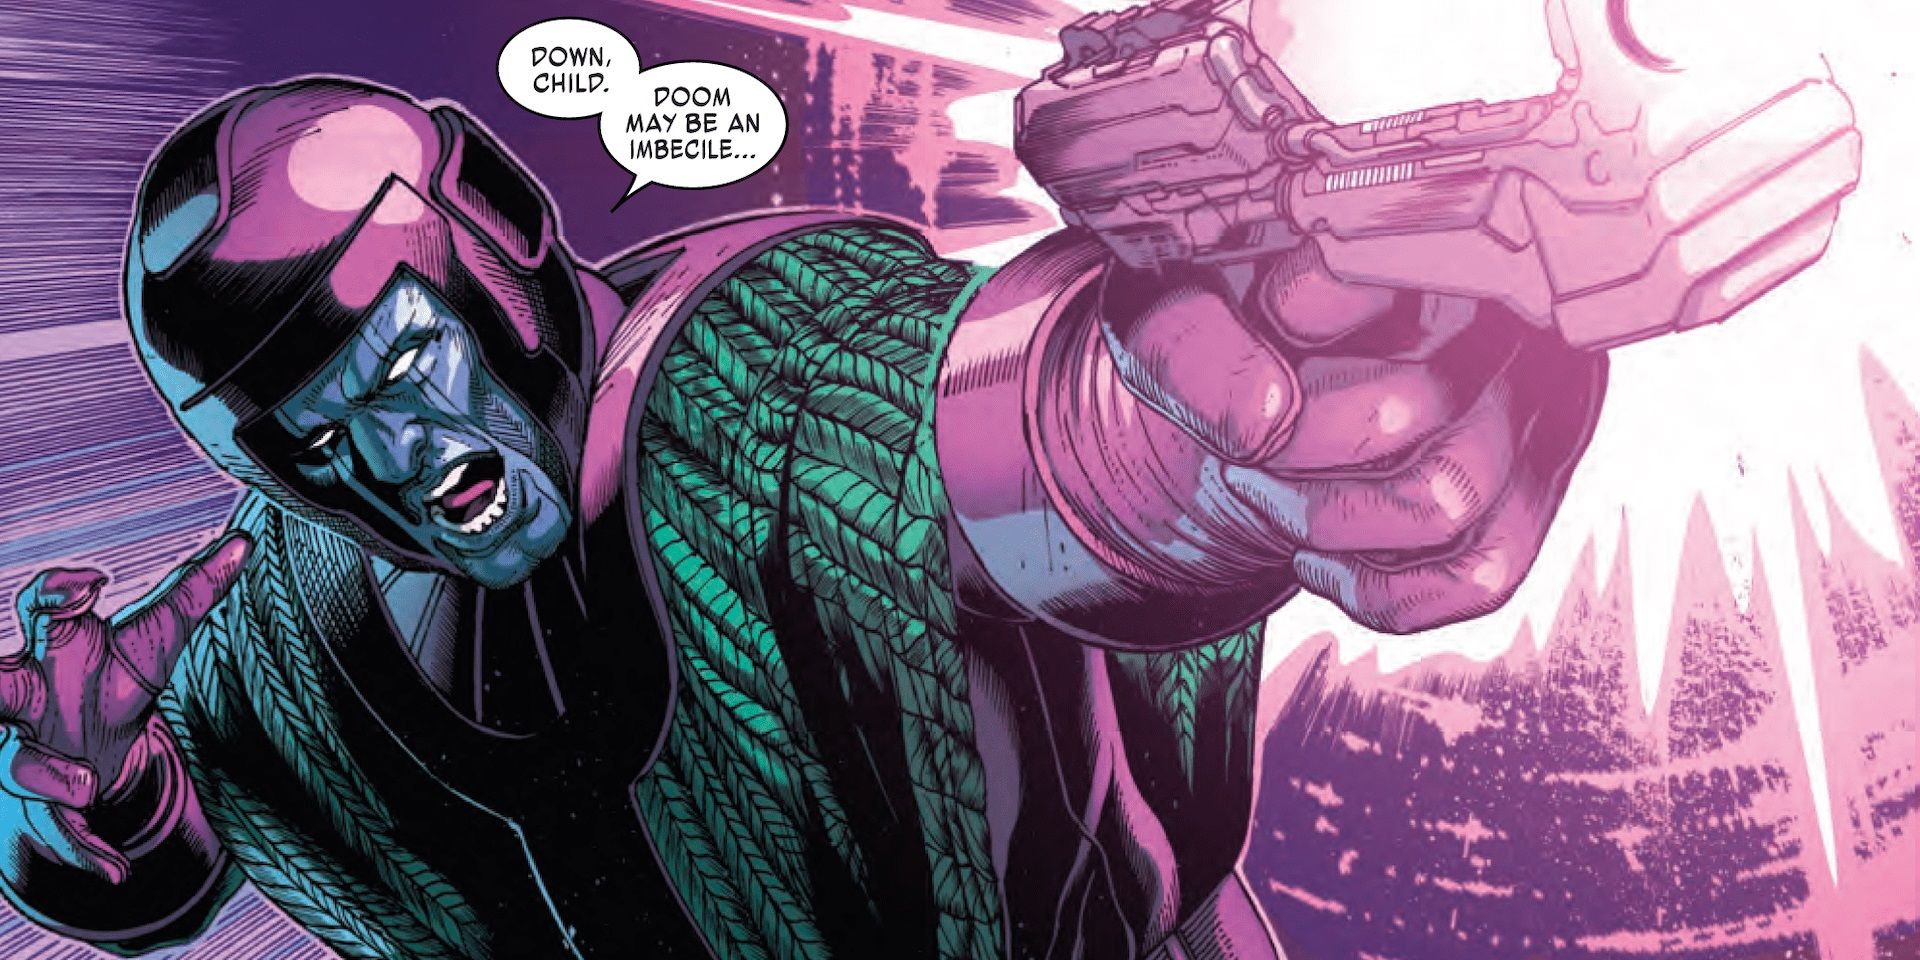 Kang the Conqueror firing a laser gun in a Marvel comic book